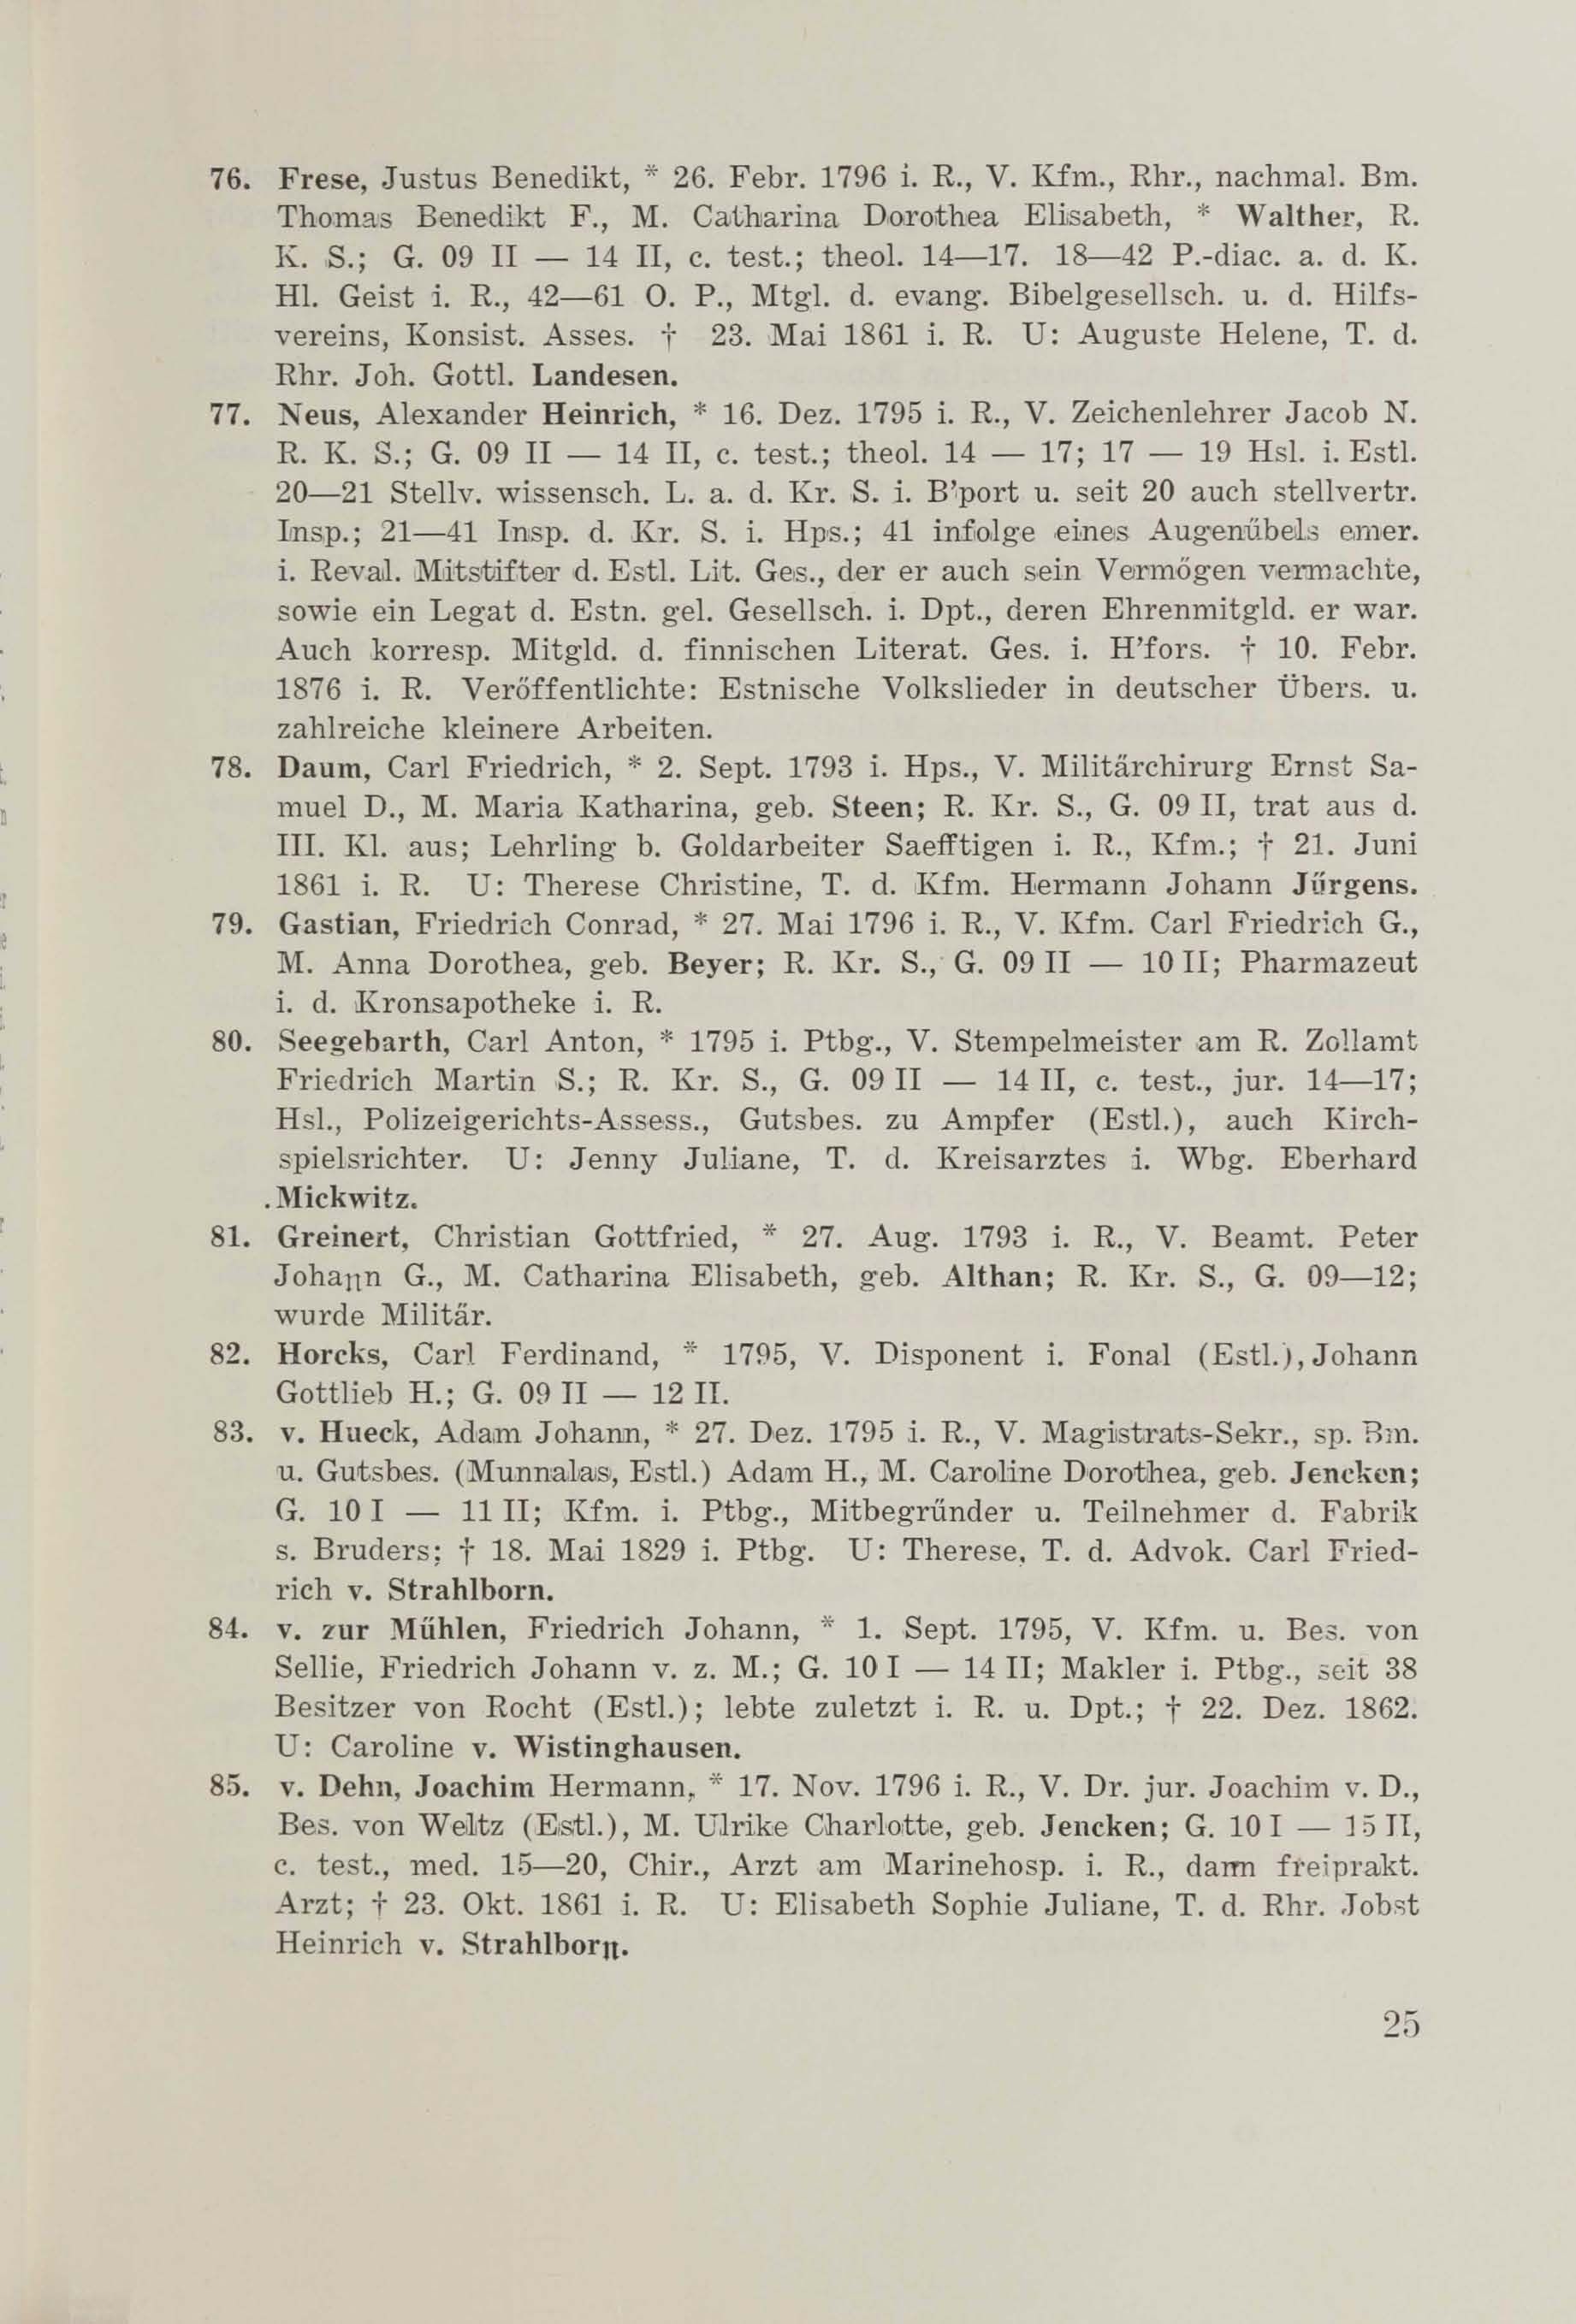 Schüler-Verzeichnis des Revalschen Gouvernements-Gymnasiums 1805–1890 (1931) | 35. (25) Haupttext